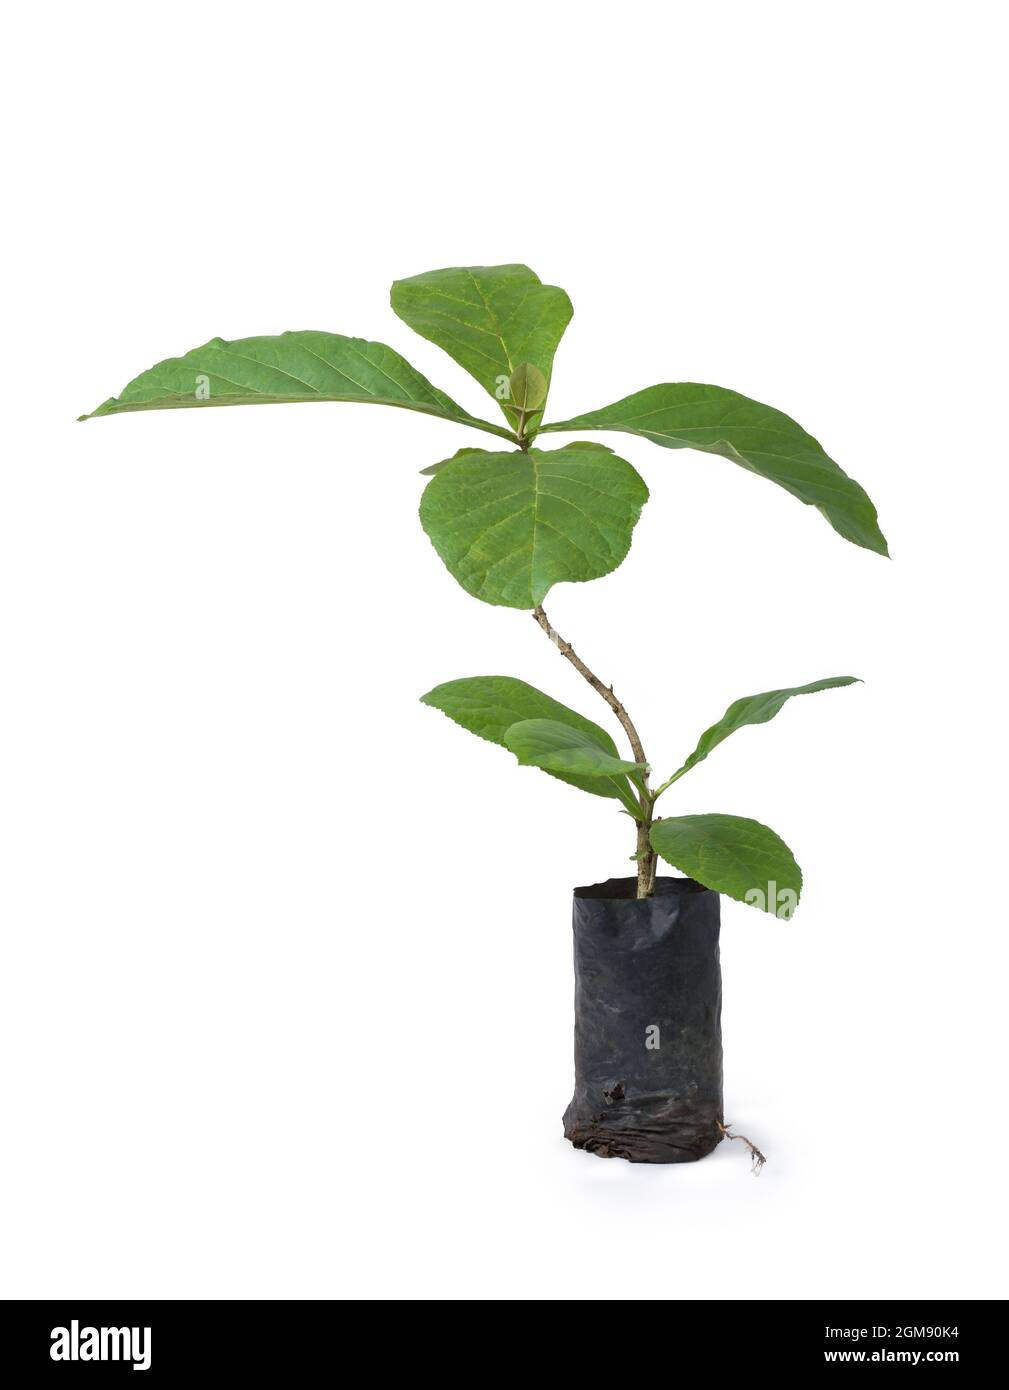 planta de teca, produce una de las maderas más valiosas, tropical, deciduo y comercialmente importante planta de árbol aislado sobre fondo blanco Foto de stock